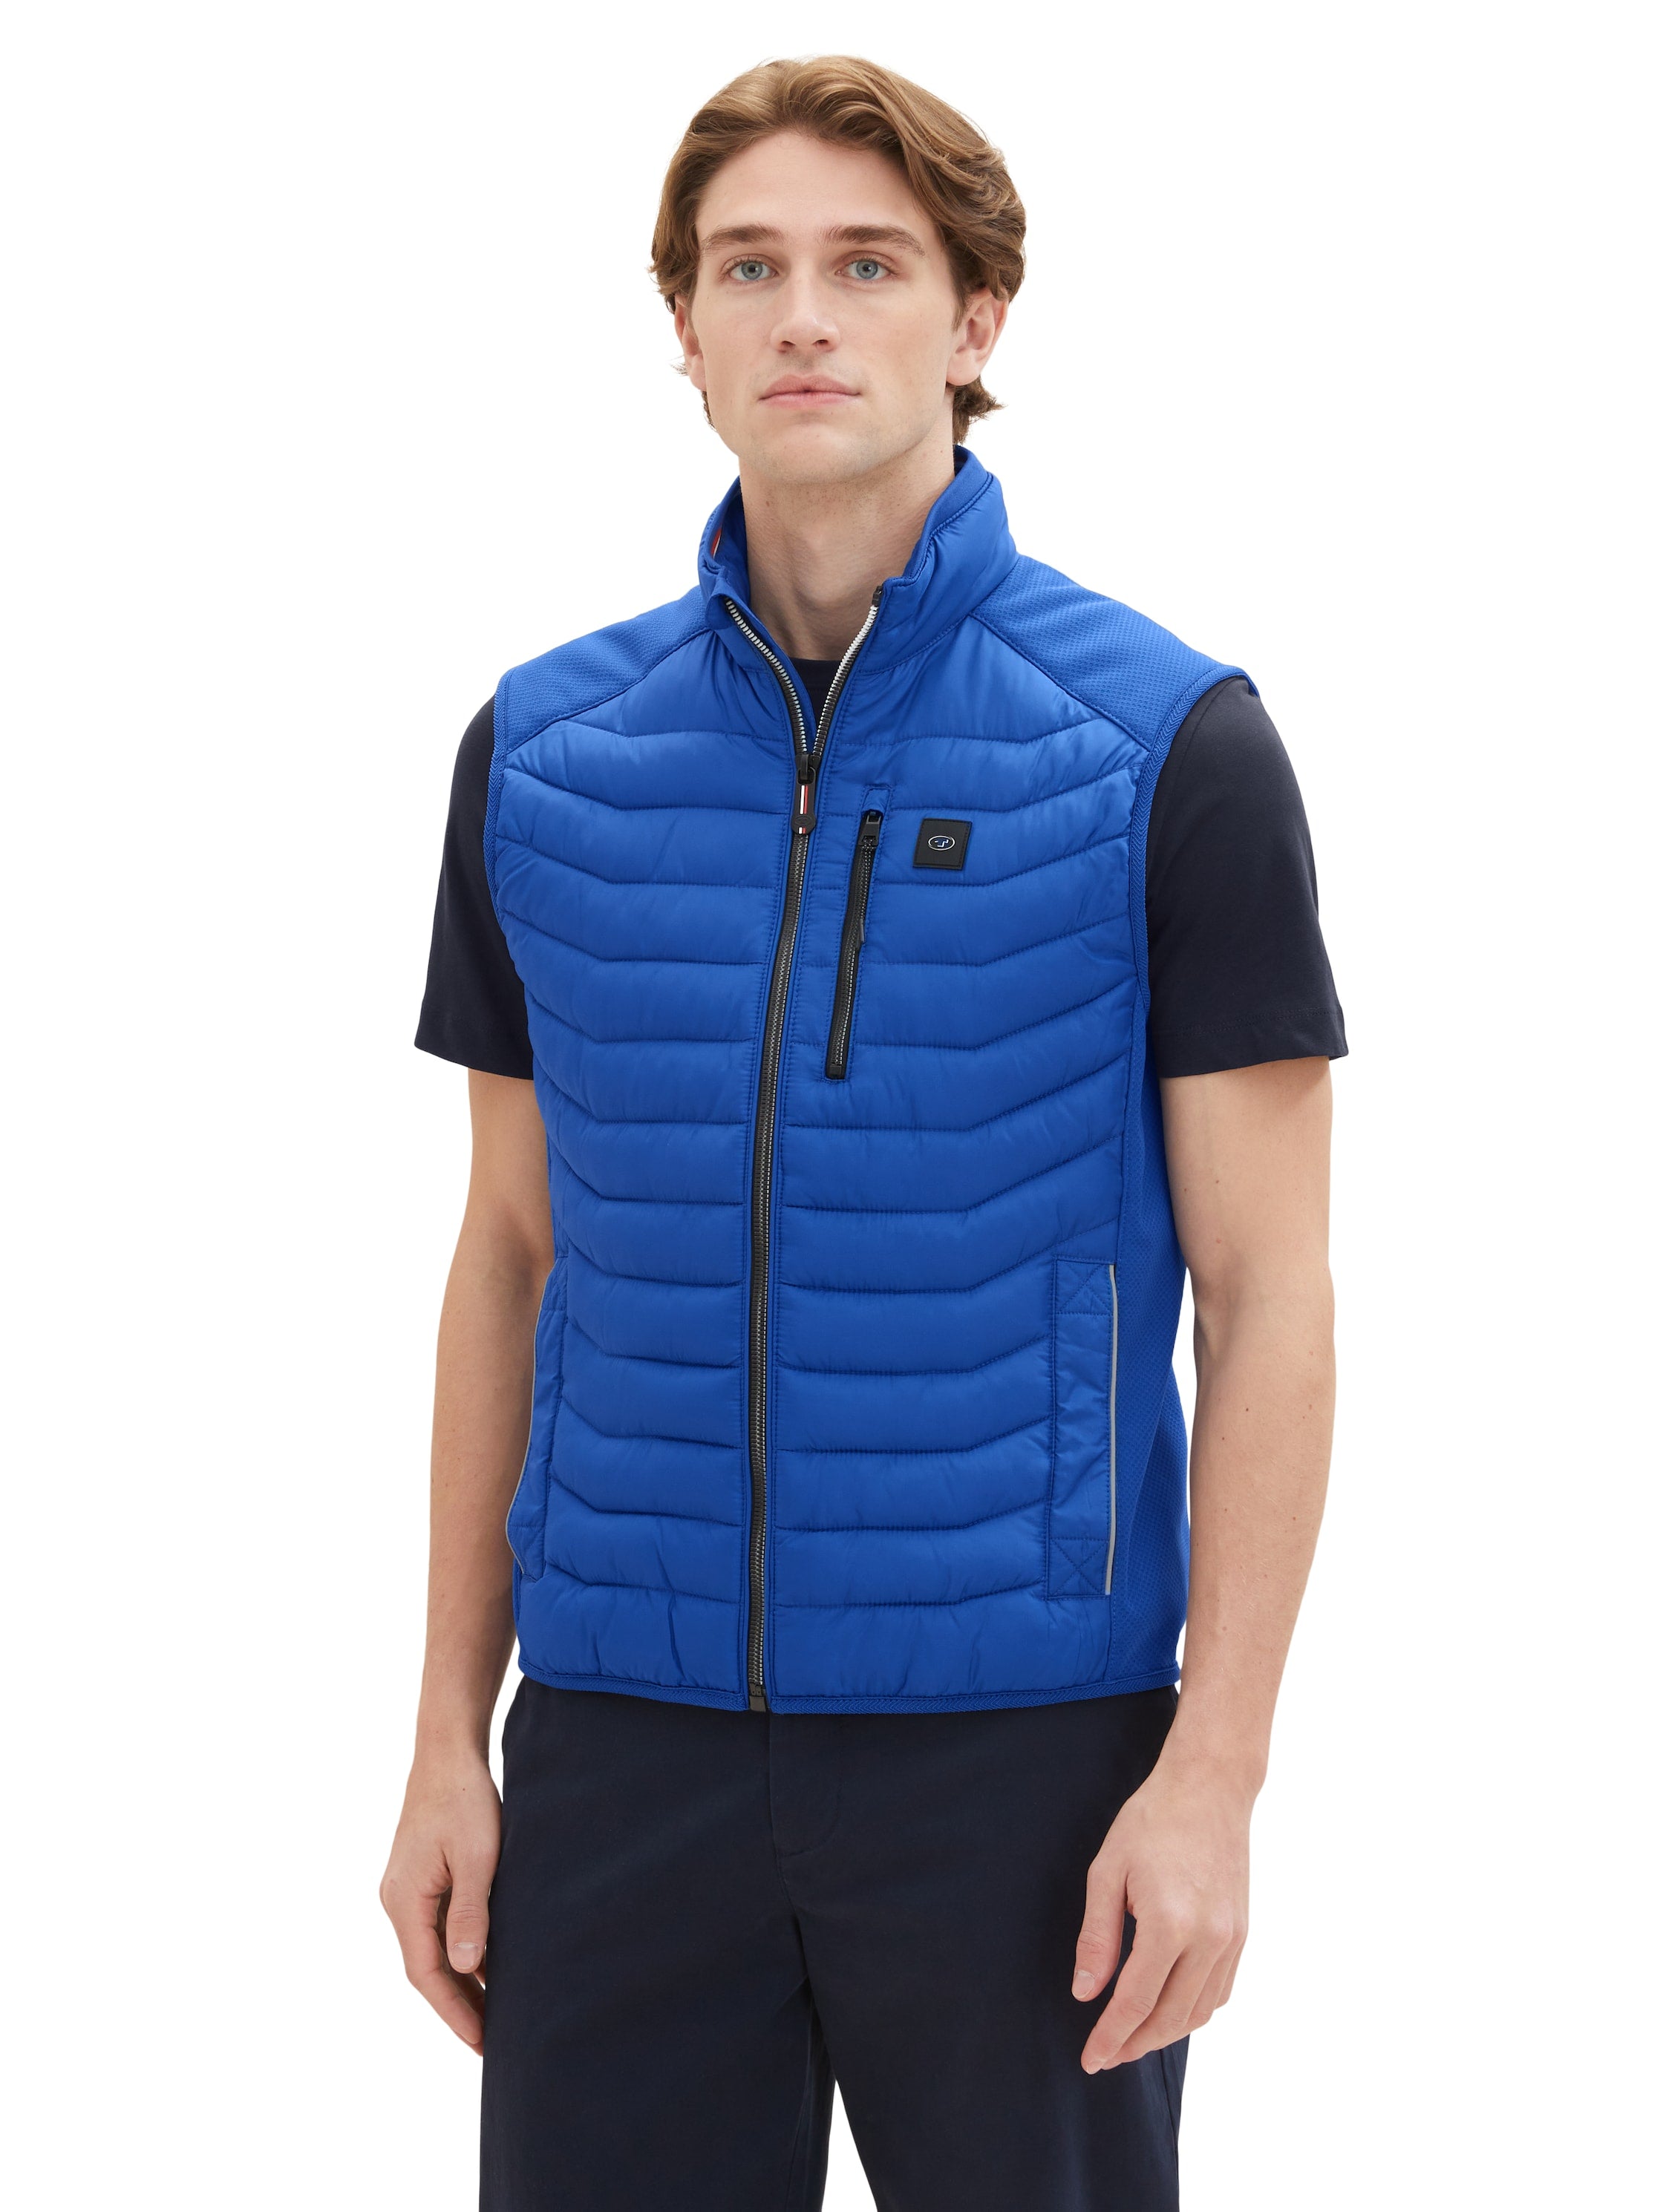 Tom Tailor Blue Hybrid Vest